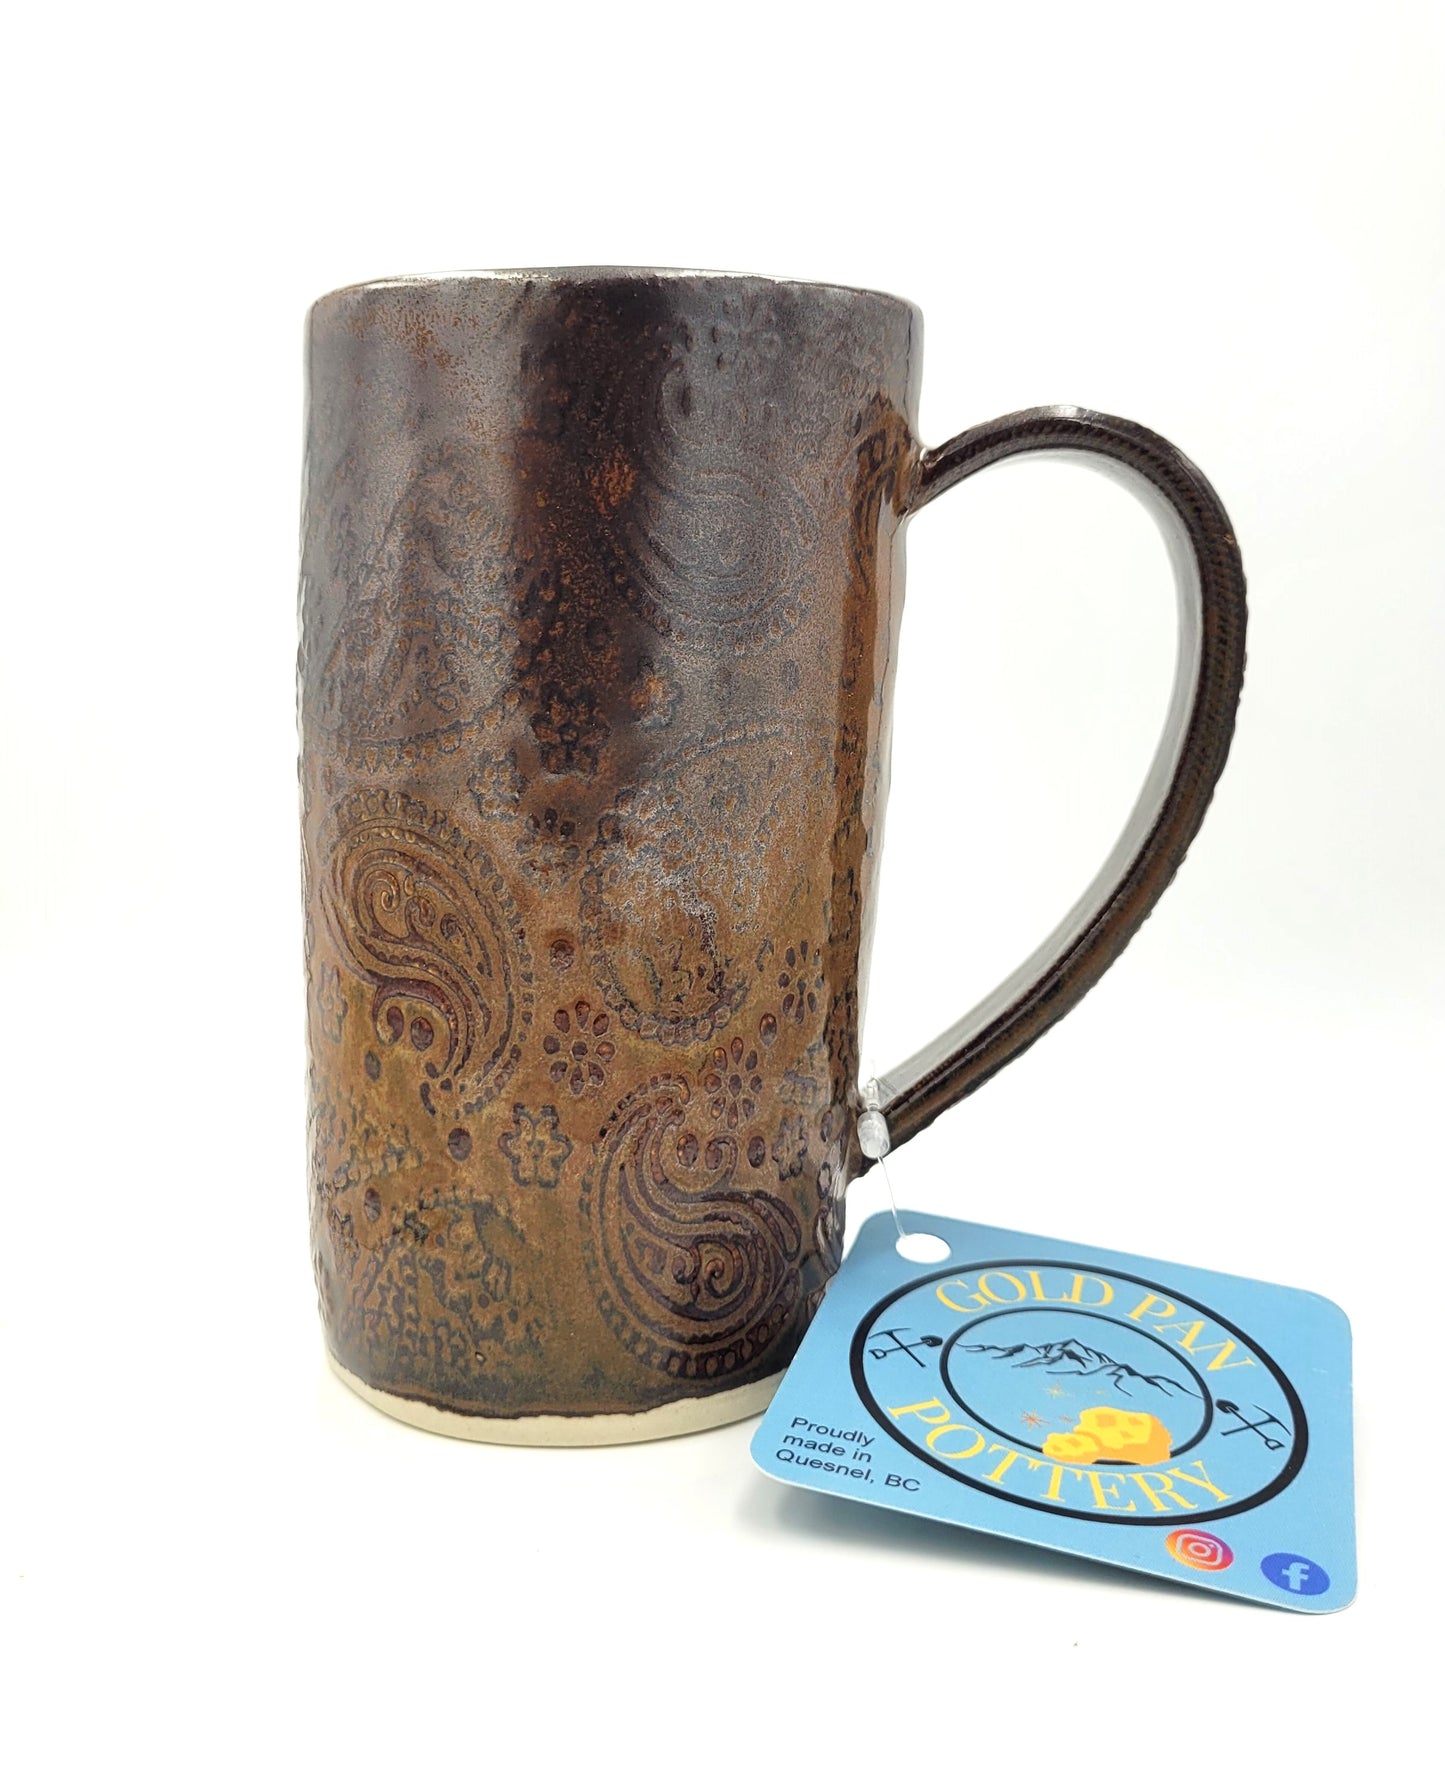 Paisley print handmade pottery mug